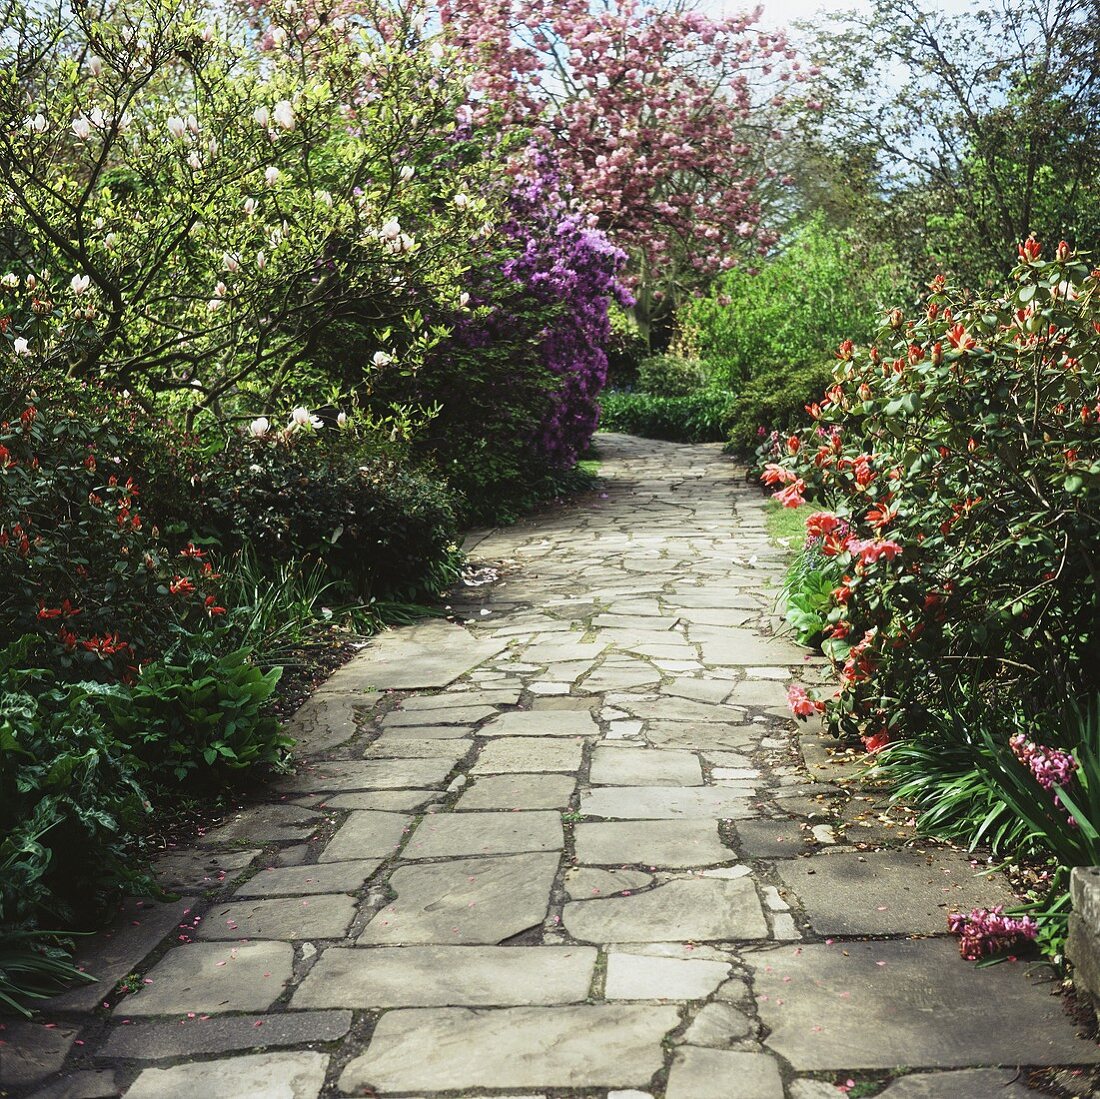 Path through a garden